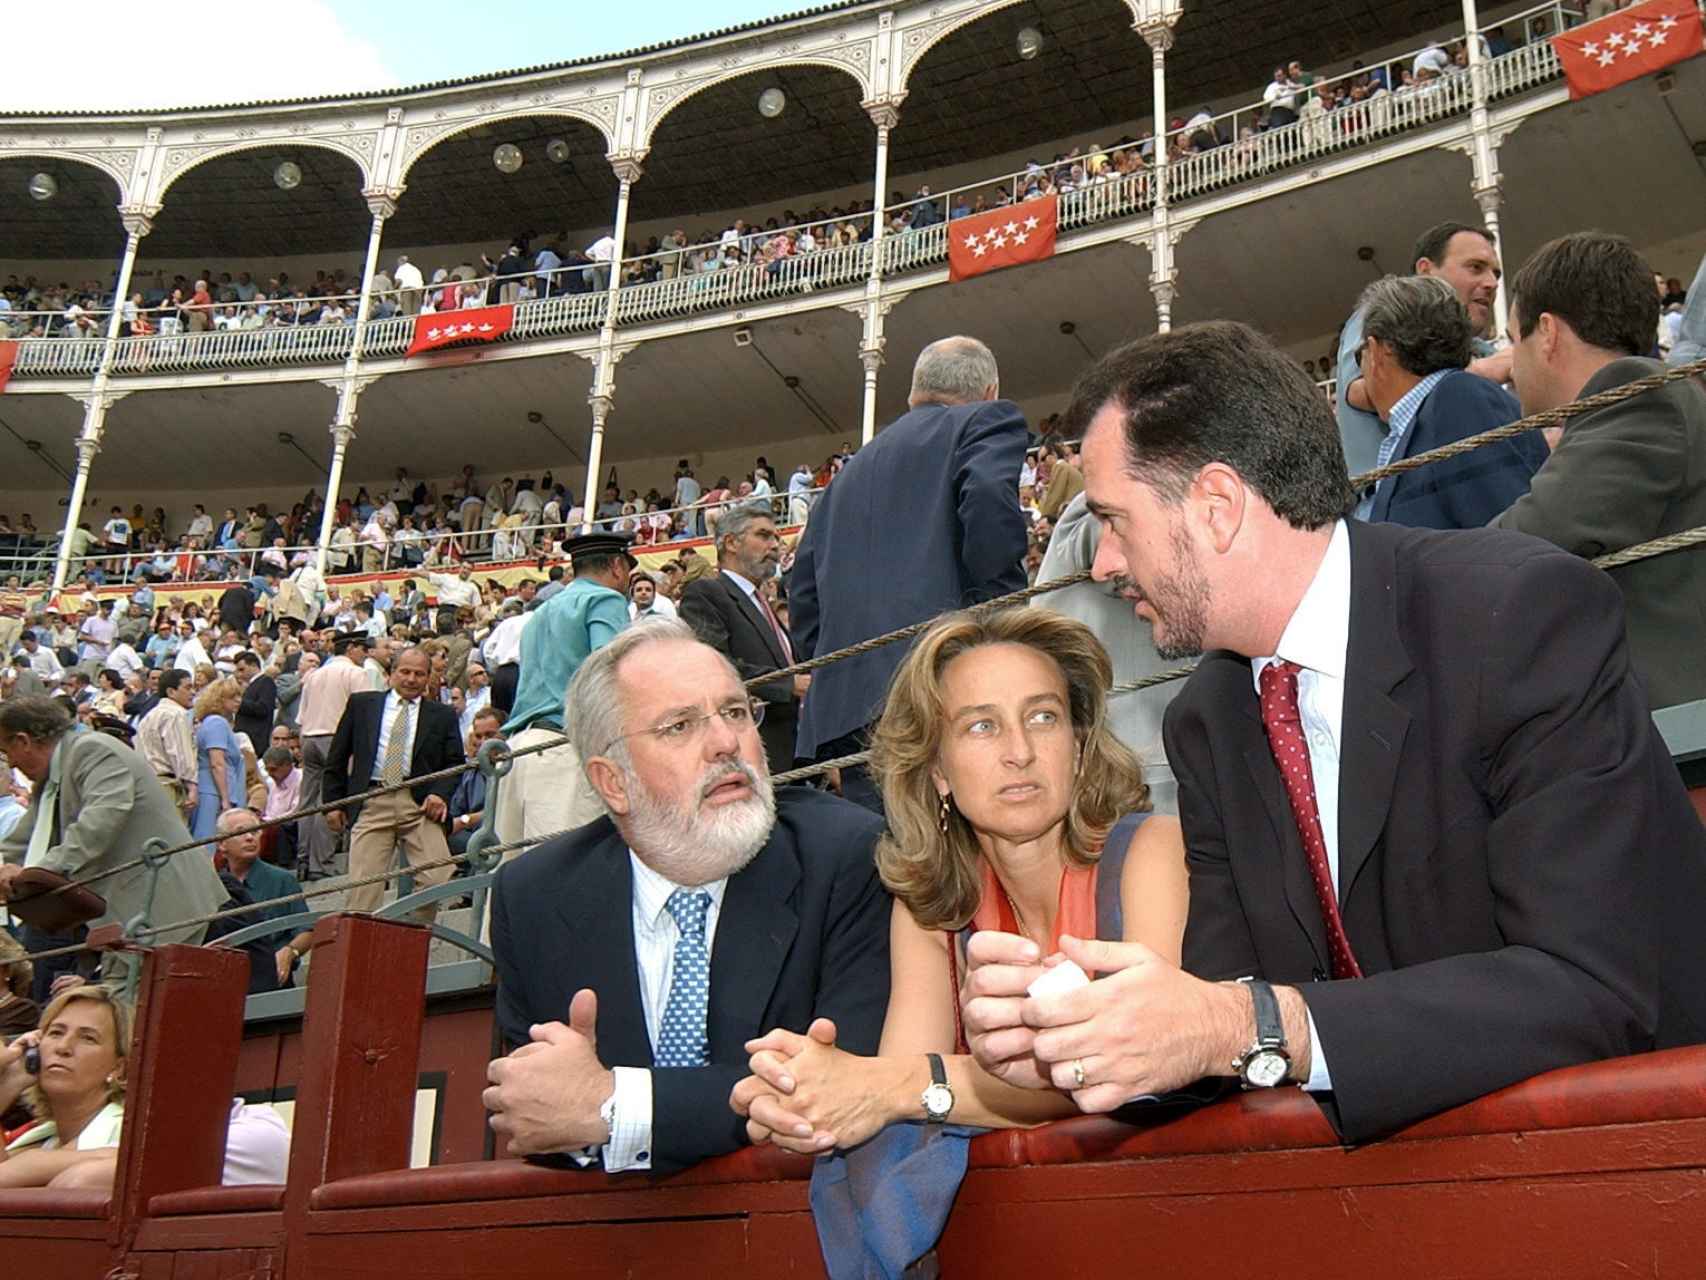 El matrimonio, durante un corrida en Las Ventas en 2003. / EFE